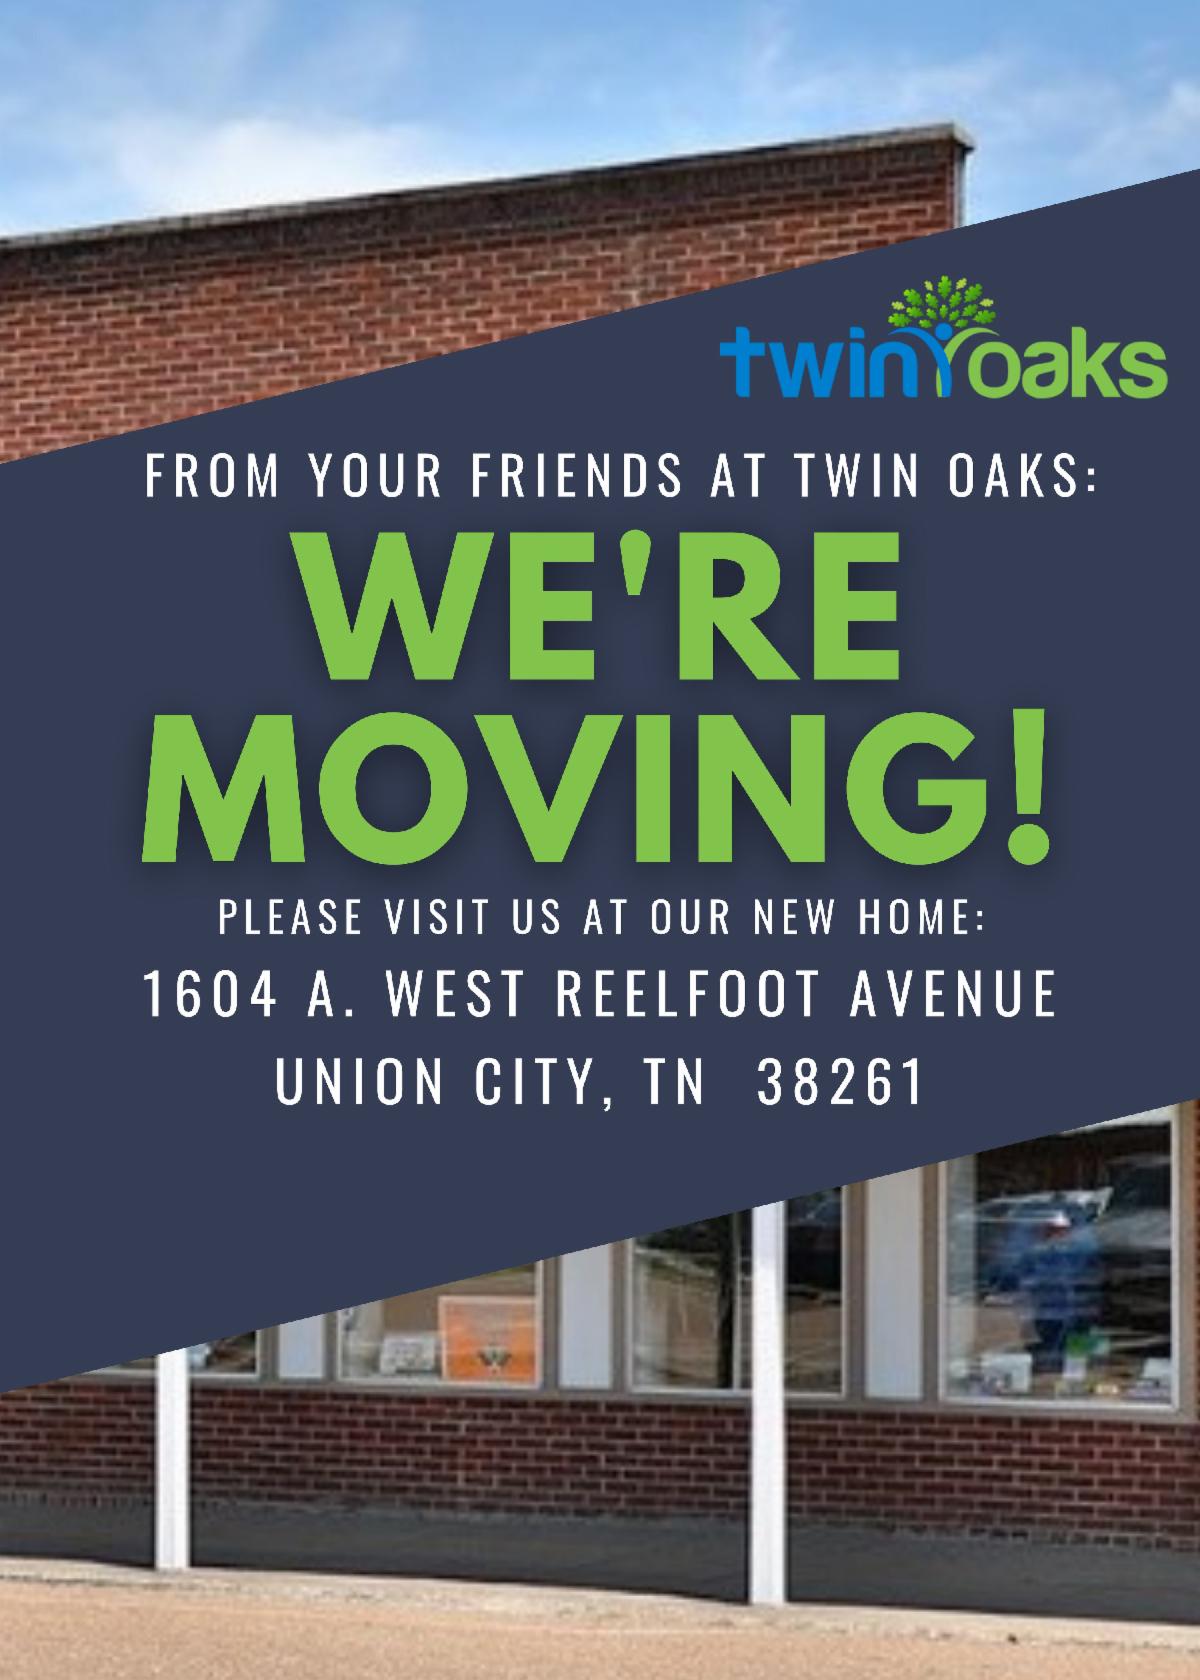 Twin Oaks is Moving!